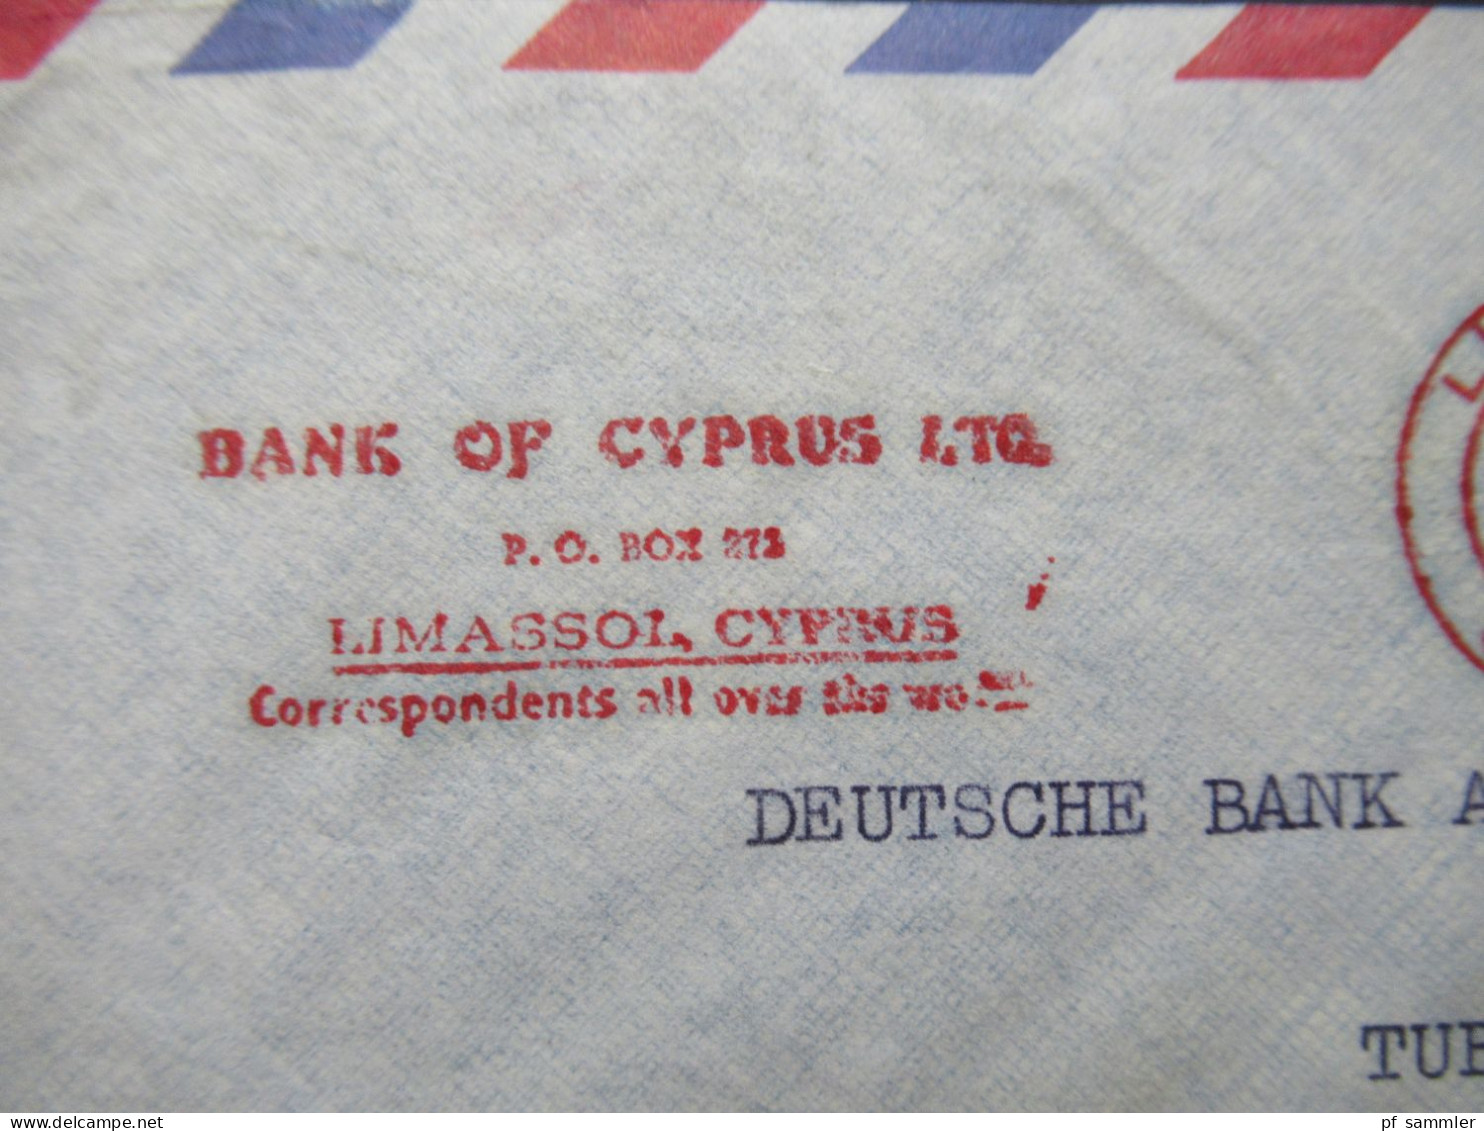 Zypern 1961 Par Avion Auslandsbrief Nach Tübingen Mit Freistempel AFS Limasol Cyprus Bank Of Cyprus LTD - Briefe U. Dokumente